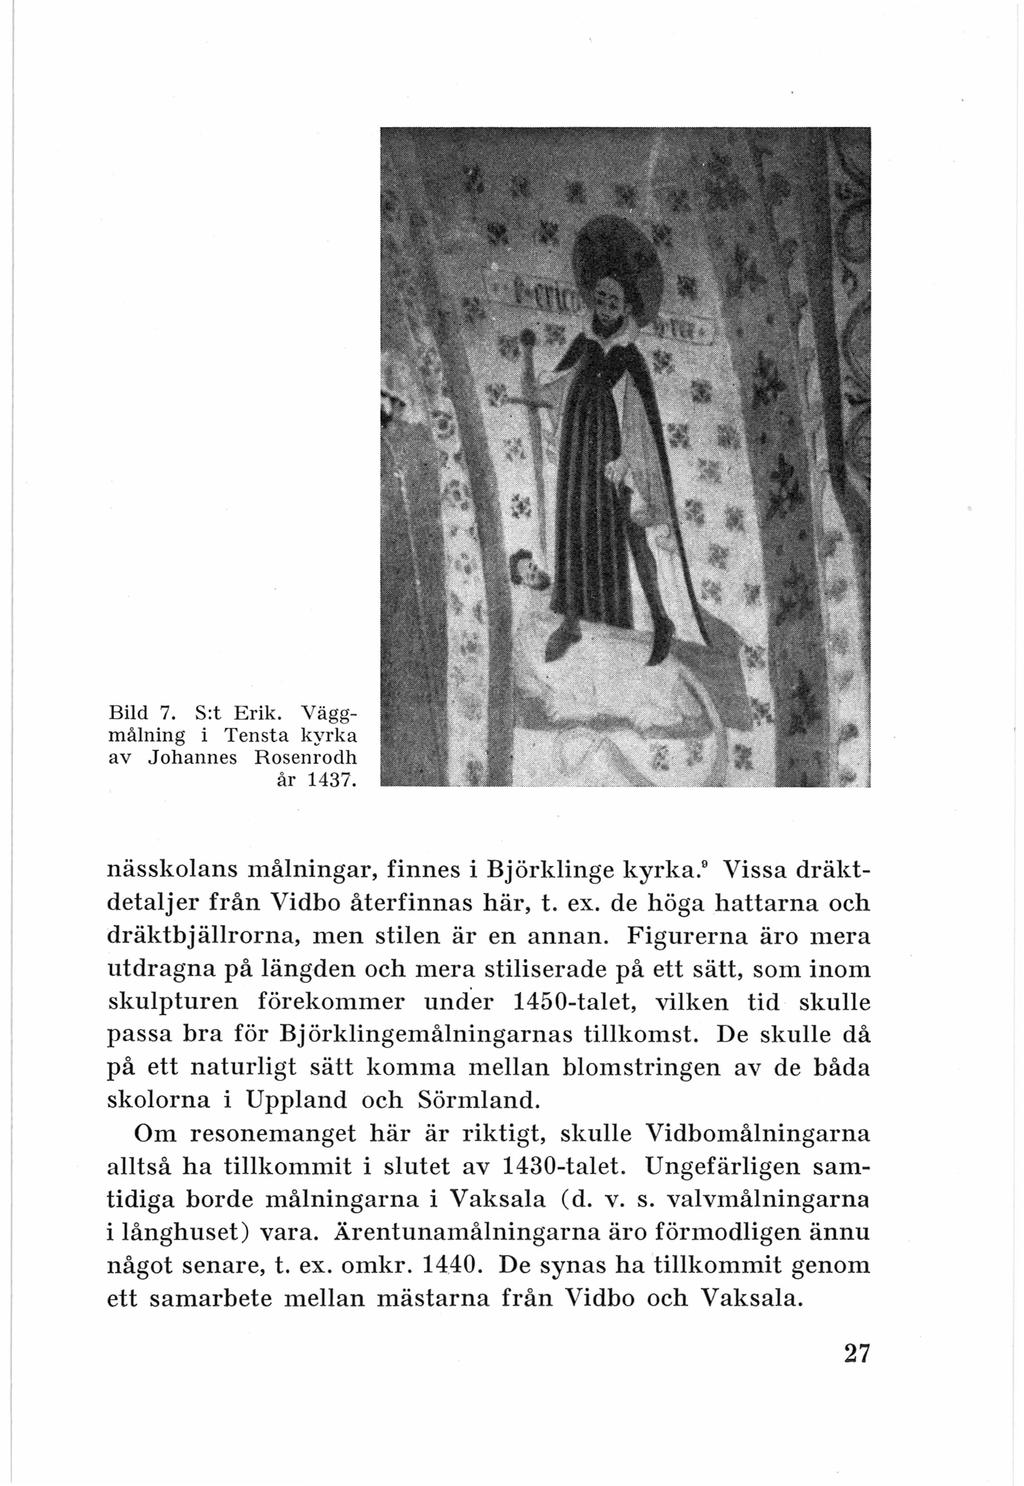 Bild 7. S:t Erik. Väggmålning i Tensta kyrka av Johannes Rosenrodh år 1437. nässkolans målningar, finnes i Björklinge kyrka. Vissa dräktdetaljer från Vidbo återfinnas här, t. ex.